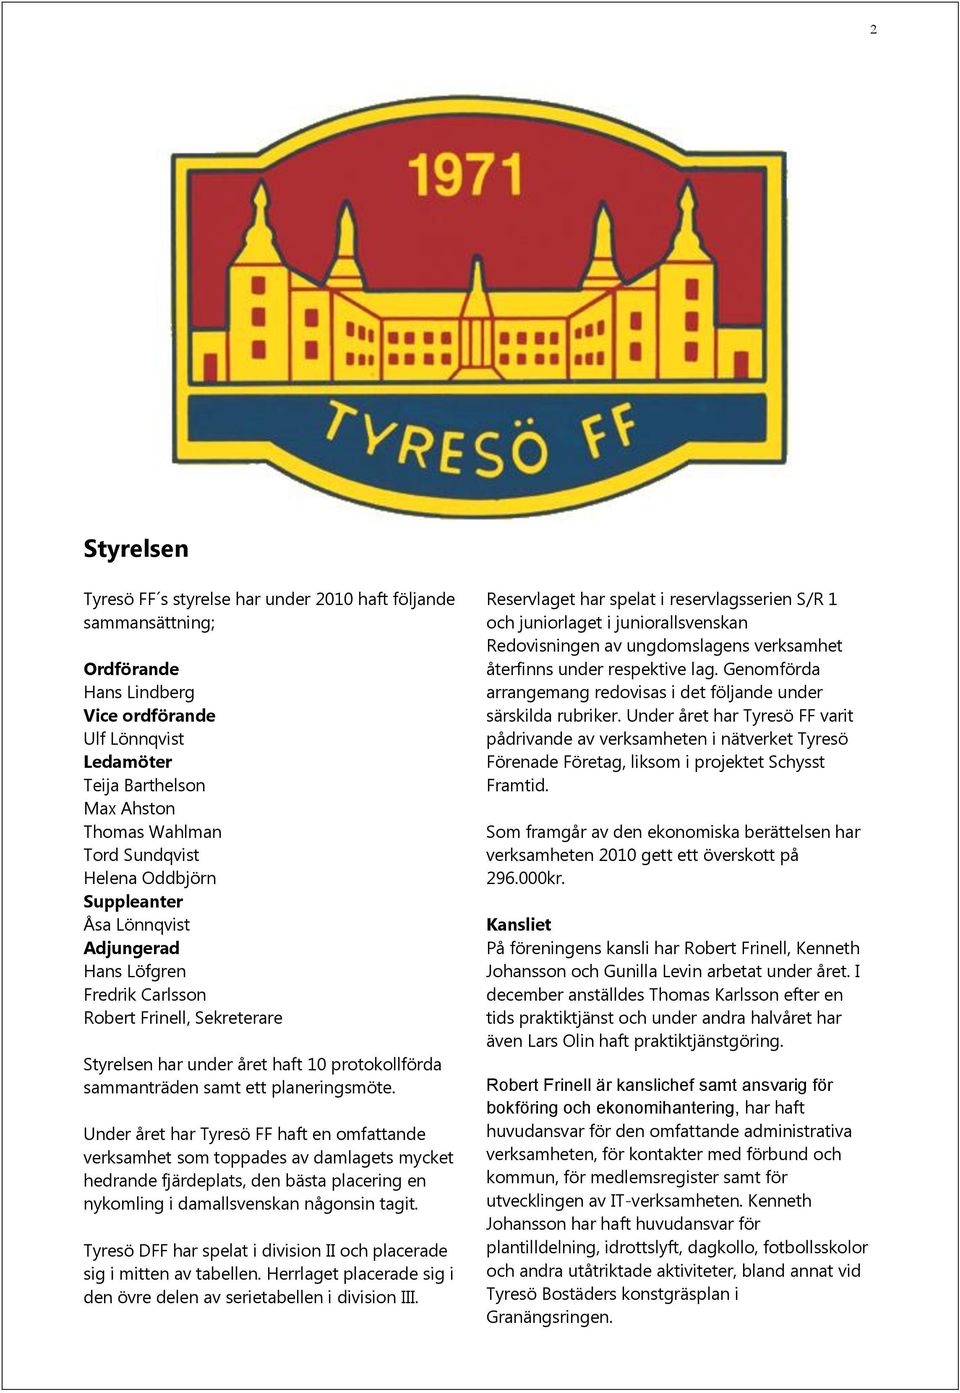 planeringsmöte. Under året har Tyresö FF haft en omfattande verksamhet som toppades av damlagets mycket hedrande fjärdeplats, den bästa placering en nykomling i damallsvenskan någonsin tagit.